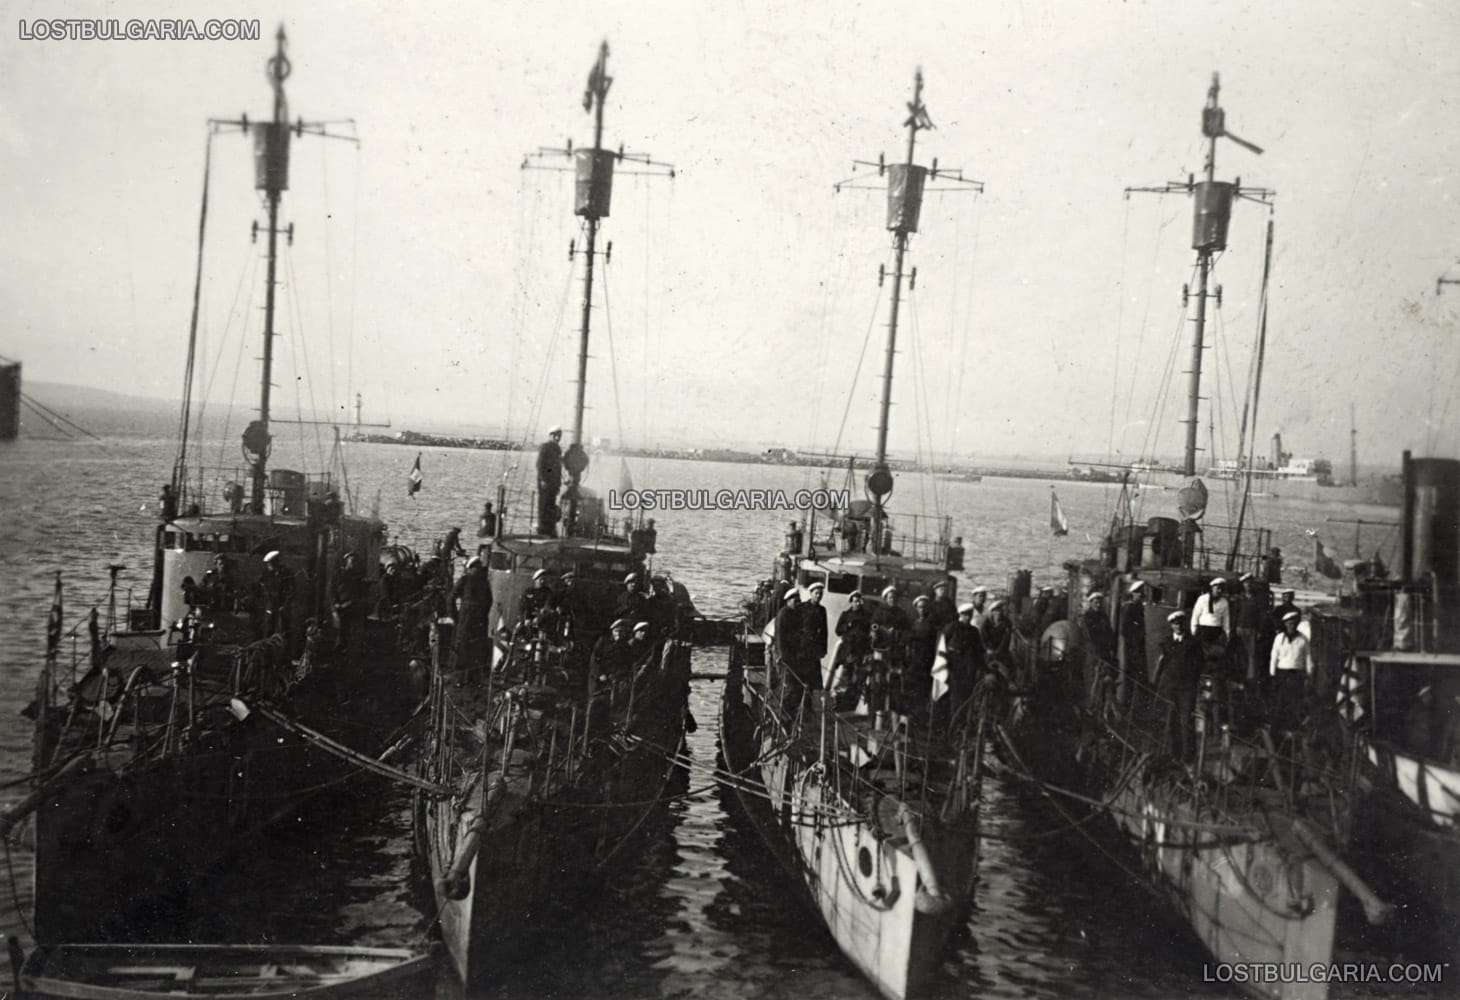 Четирите оцелели след Първата световна война български торпедоносеца: "Дръзки", "Смели", "Строги" и "Храбри" ("Шумни" е потопен след като се натъква на руска мина, а "Летящи" е потопен от некадърния си френски командир след сключването на Ньойския договор - 1919 г., след натъкване на подводни скали). Снимката е направена най-вероятно в края на 30-те години на ХХ век в пристанище Бургас, по време на т.н. "отрядни плавания", след модернизацията на корабите. Вдясно се вижда димоходът и част от корпуса на учебния кораб "Камчия"